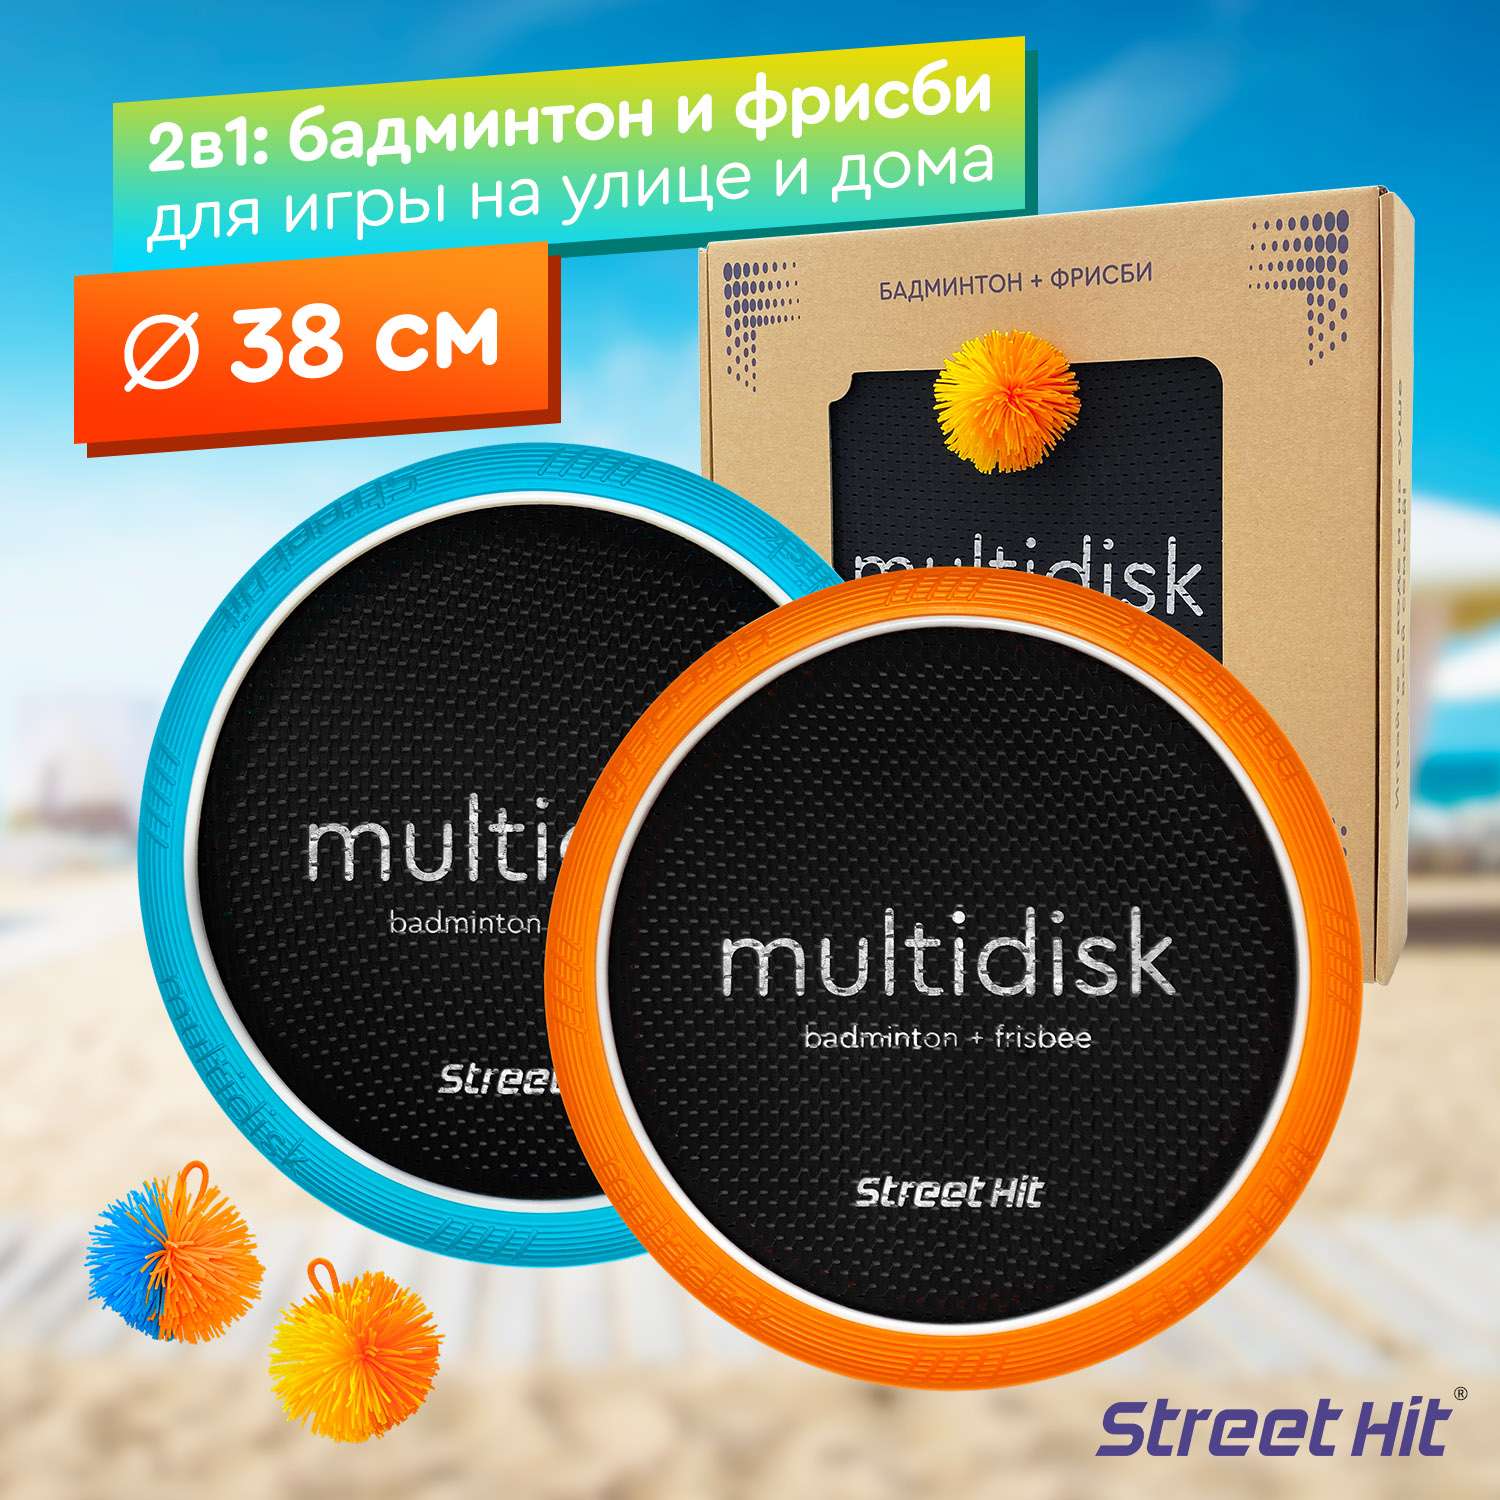 Набор для игры Street Hit Мультидиск Maxi 38 см оранжево-голубой - фото 1